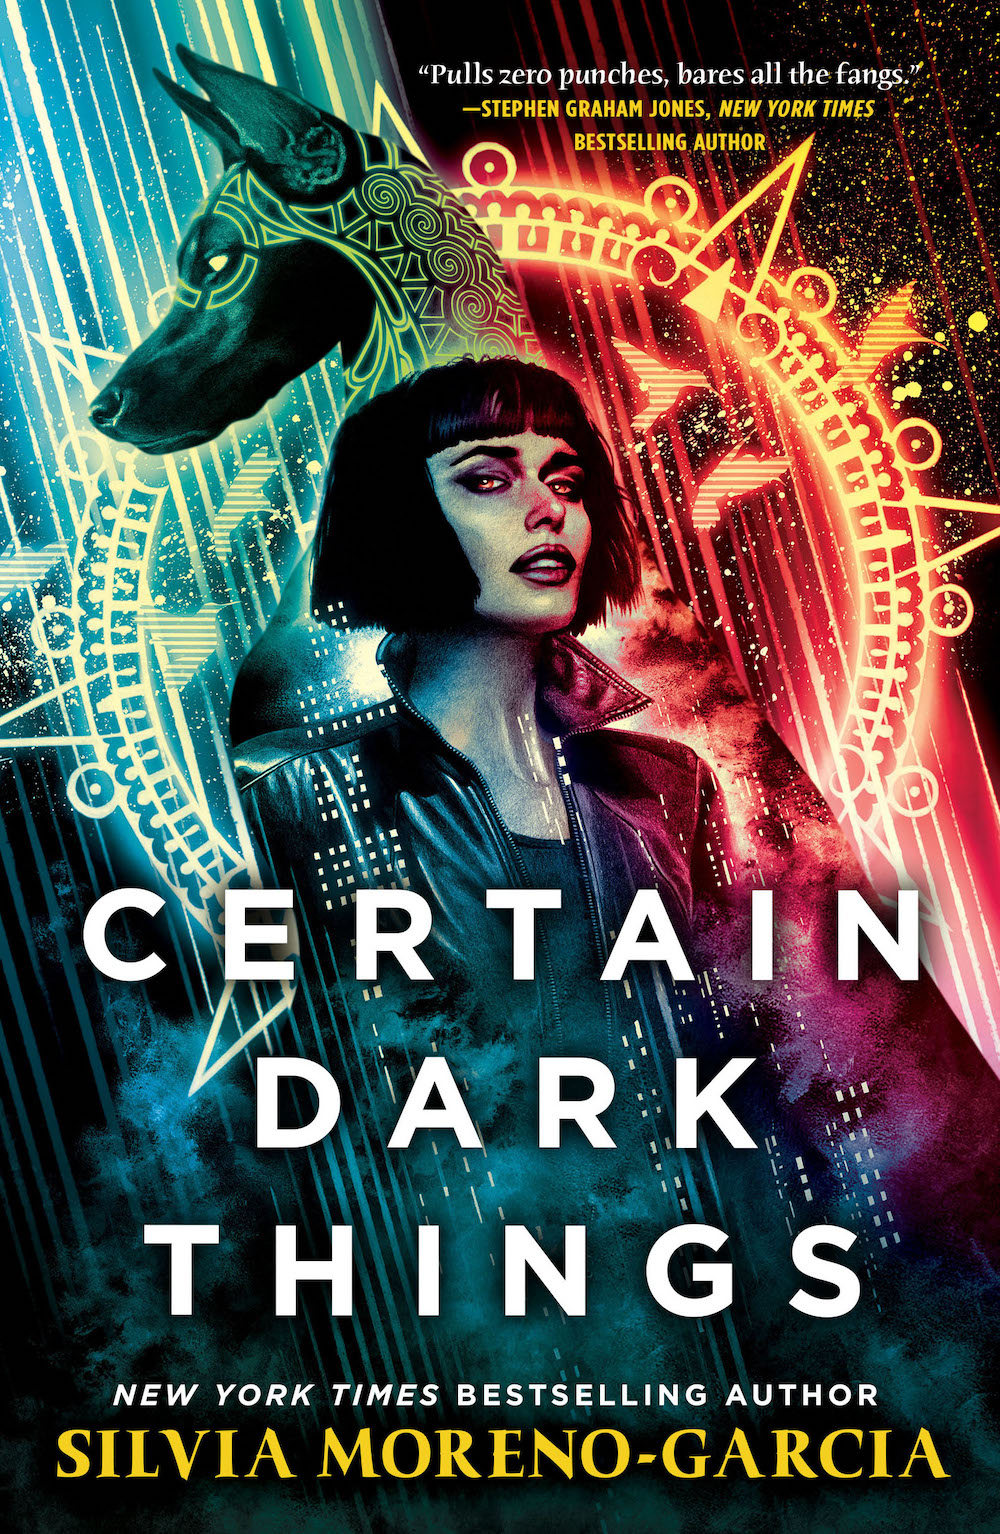 Certain Dark Things - 525